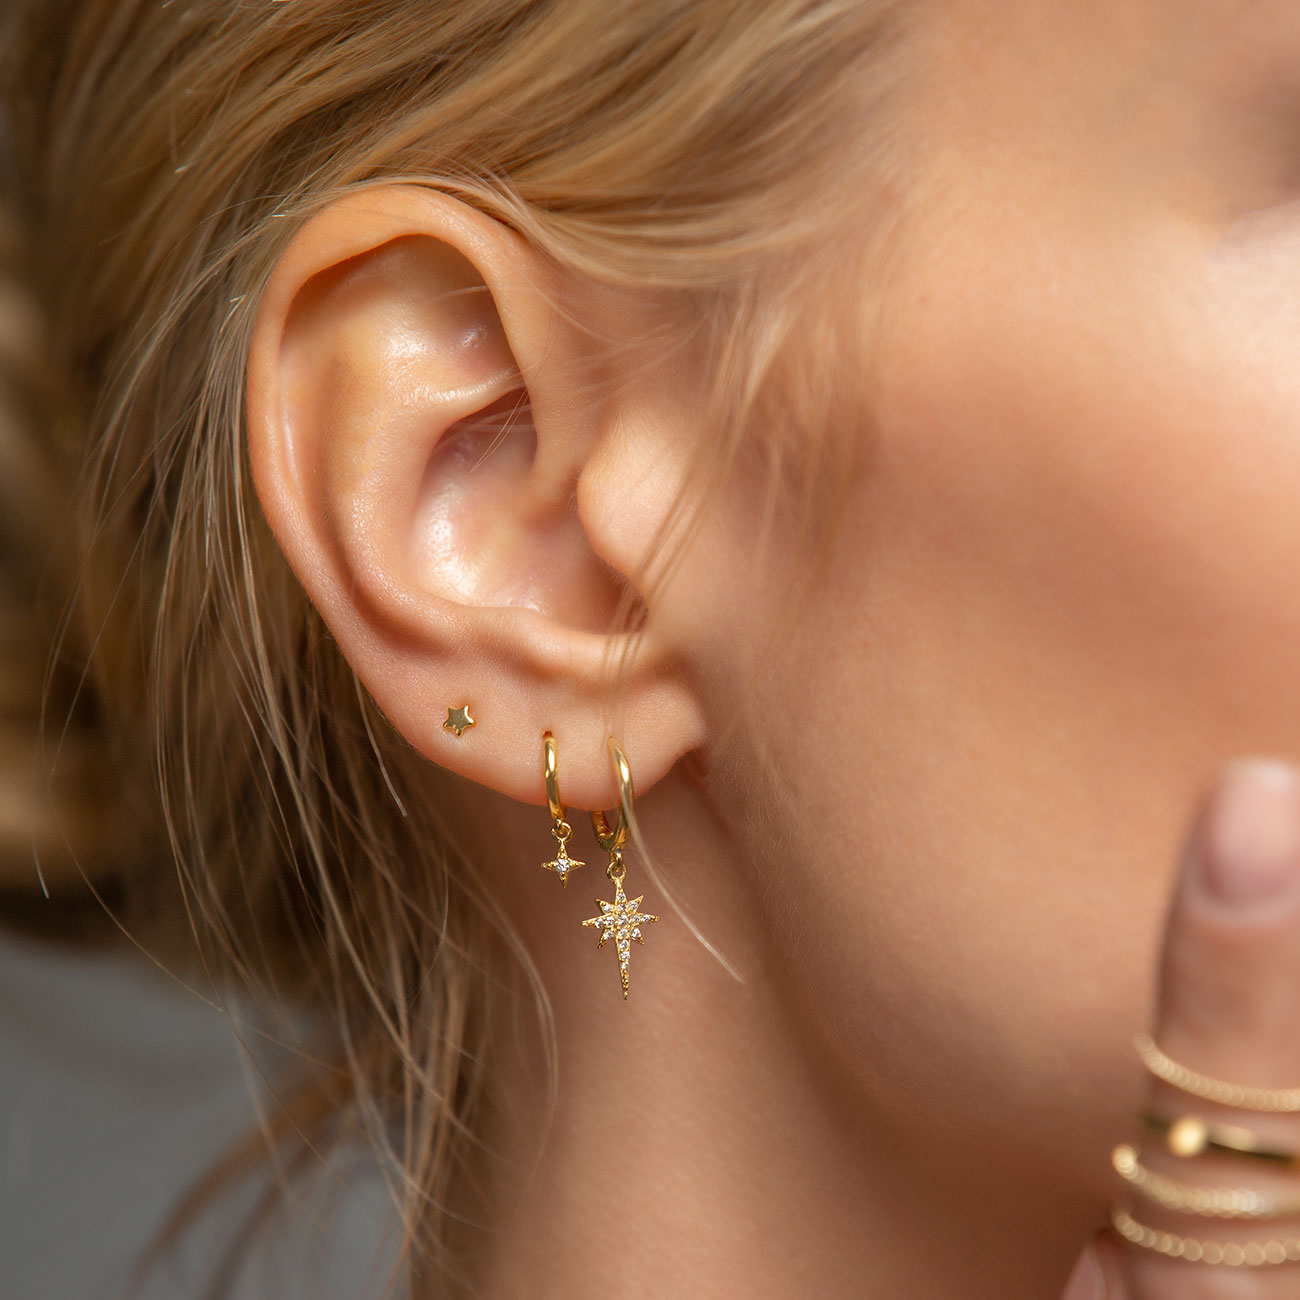 Stud Earrings for Women Dainty Gold Earrings|14k Gold Cartilage Earring  Hypoallergenic|Flat Back Earring Set for Multiple Piercing Small Hoop  Earrings